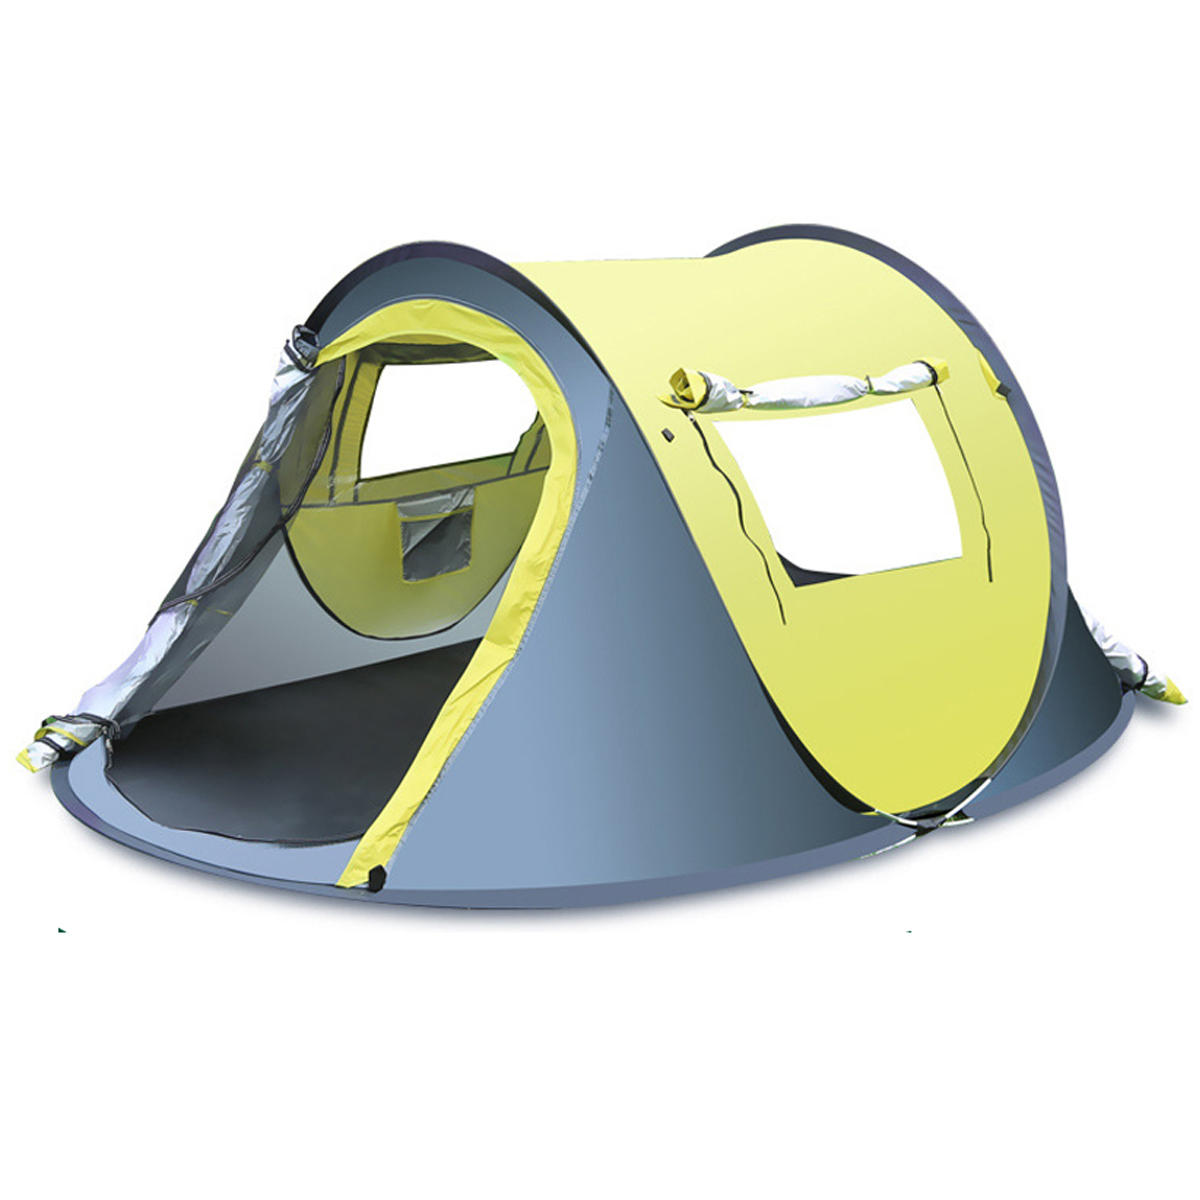 Açık hava için 3-4 kişilik hızlı otomatik açılır çadır, su geçirmez yağmurluklu güneşlikli barınak kamp yapmak ve yürüyüş yapmak için ideal.